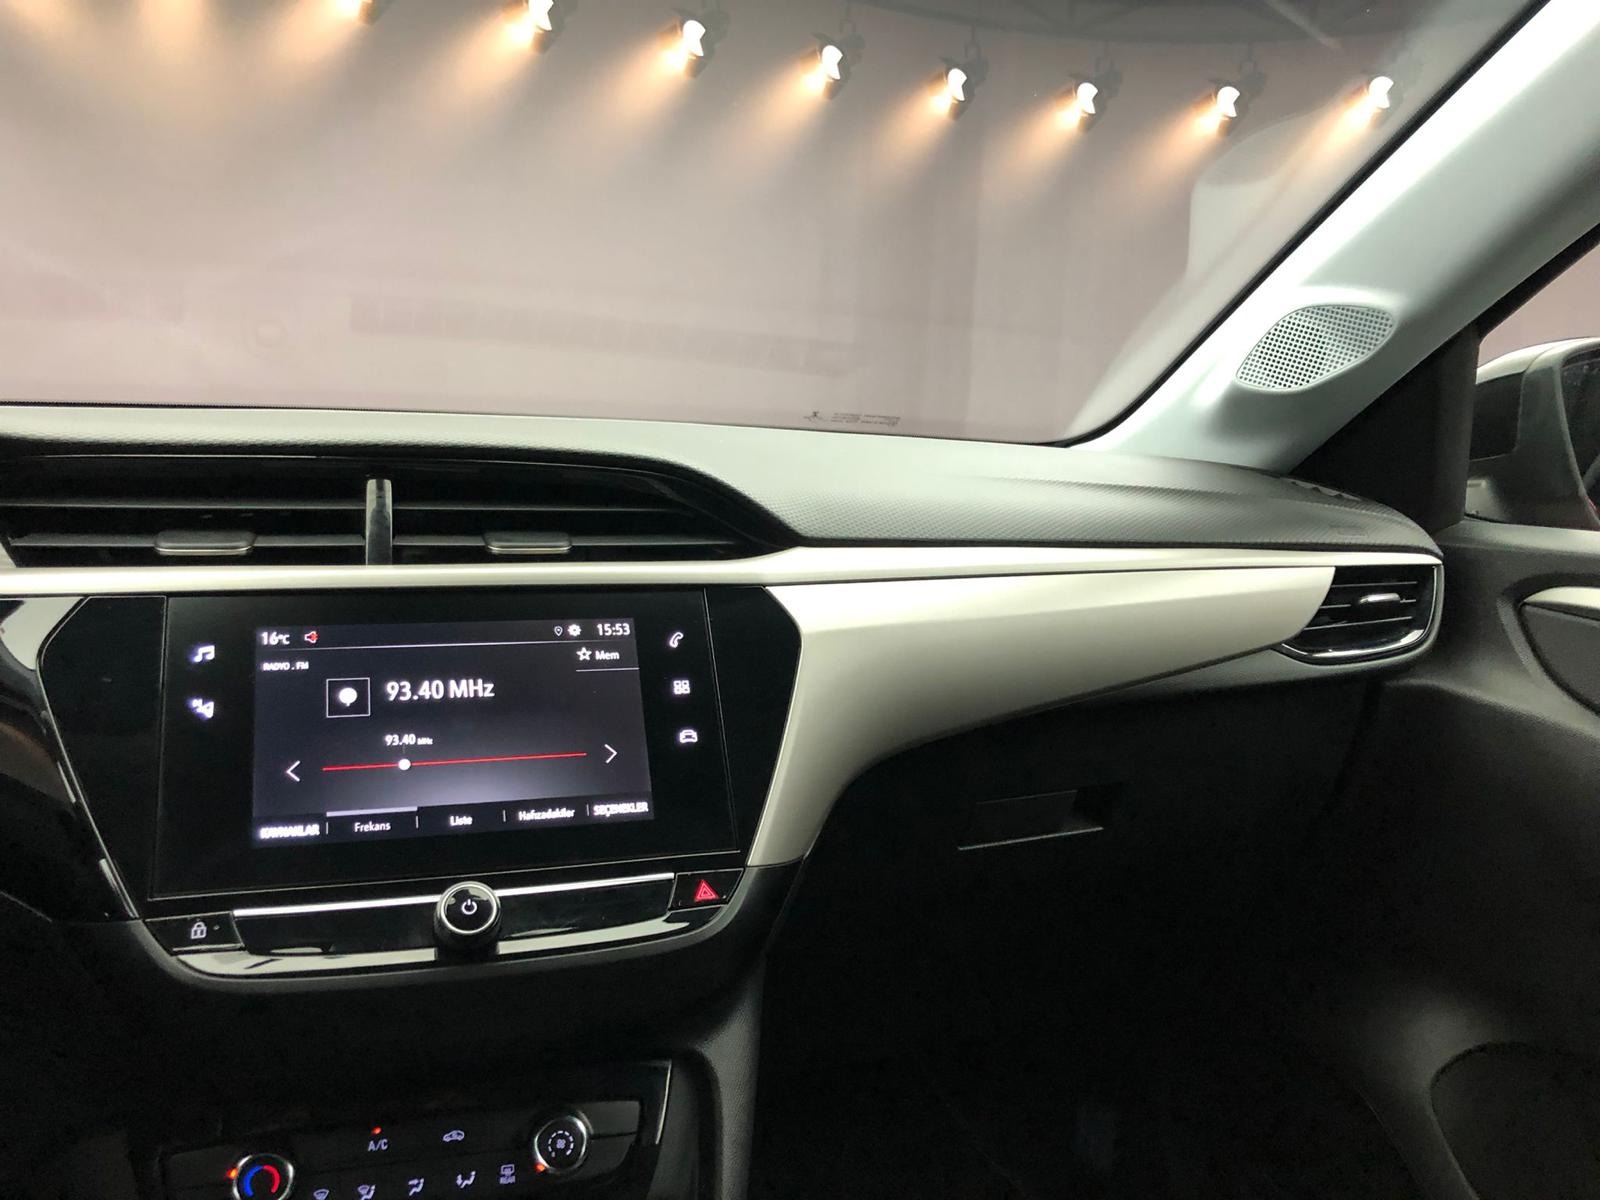 2021 Boyasız Otomatik ÇiftRenk Navi Ş.Takip CarPlay-20